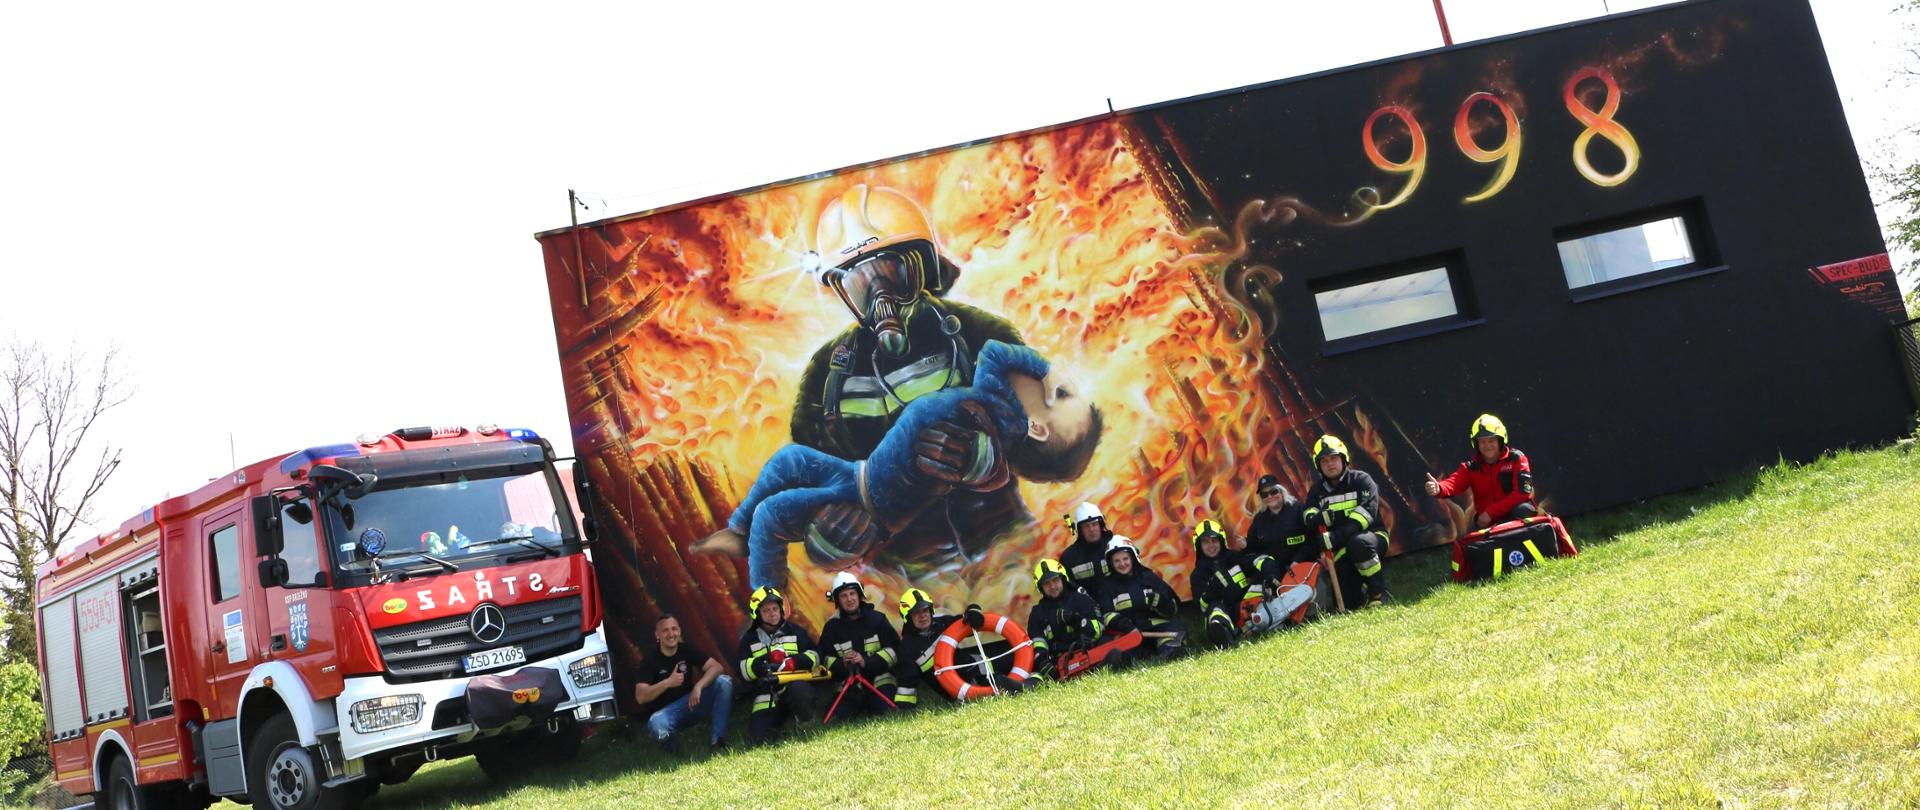 Zdjęcie przedstawia ścianę budynku remizy strażackiej na której jest namalowany strażaka niosący małe dziecko oraz numer alarmowy 998. Przed ścianą siedzą na trawie ochotnicy ubrani w stroje strażacki oraz hełmy strażackiej. Po lewej stronie stoi wóz strażacki marki Mercedes-Benz.